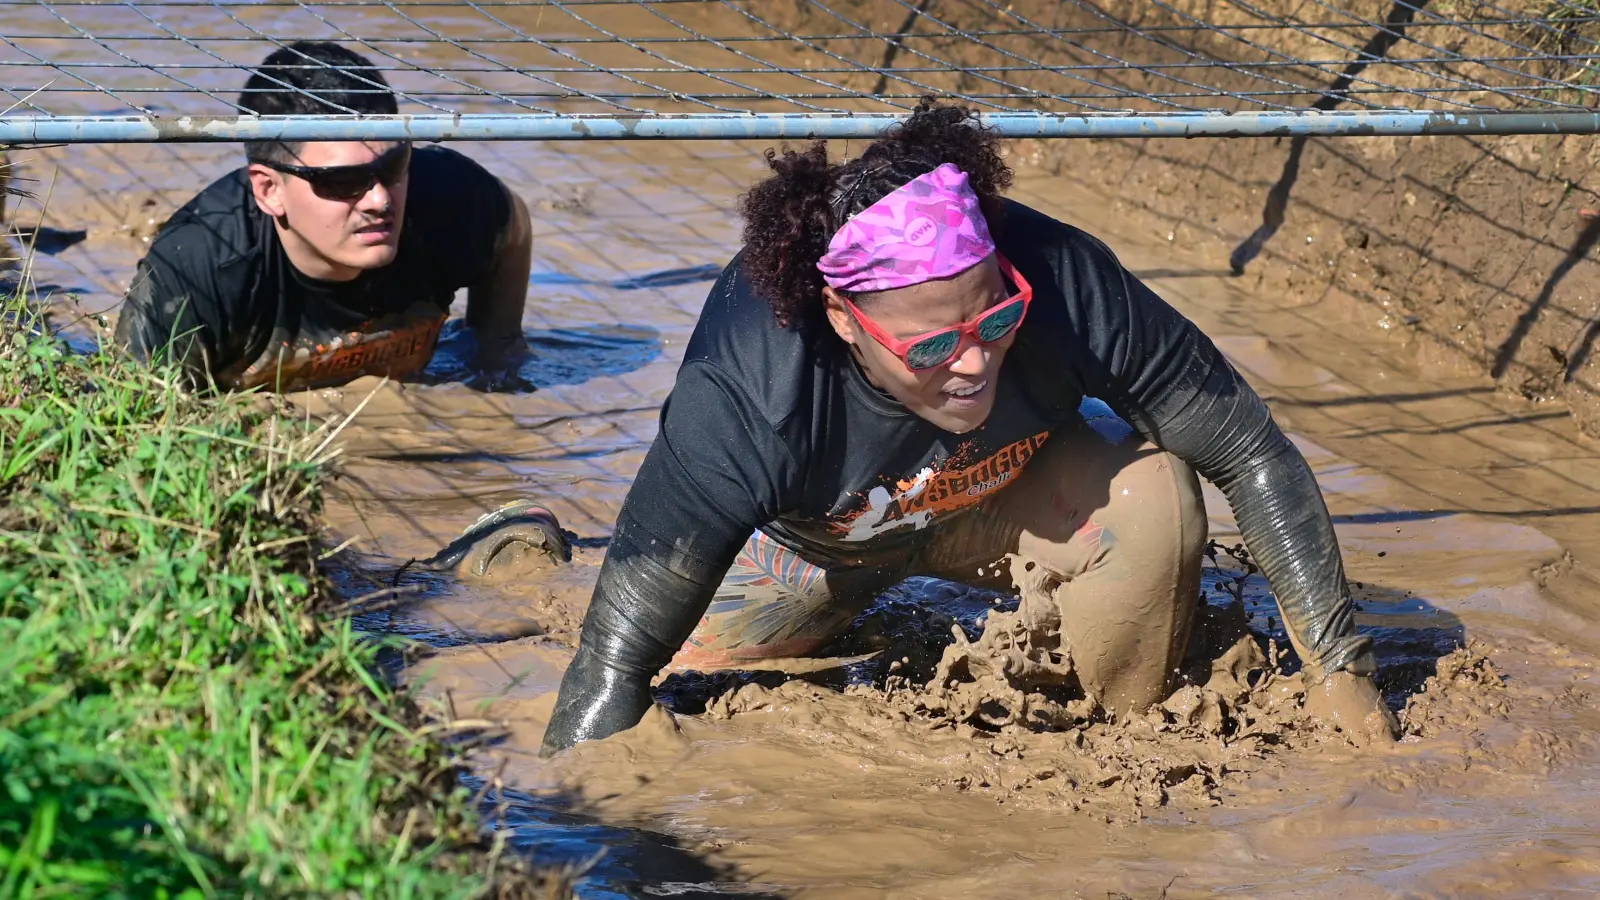 Durch Wasserlöcher und andere Hindernisse hindurch mussten sich die Teilnehmer des „Ansbogger Challenge Fun Run” kämpfen. (Foto: Jim Albright)